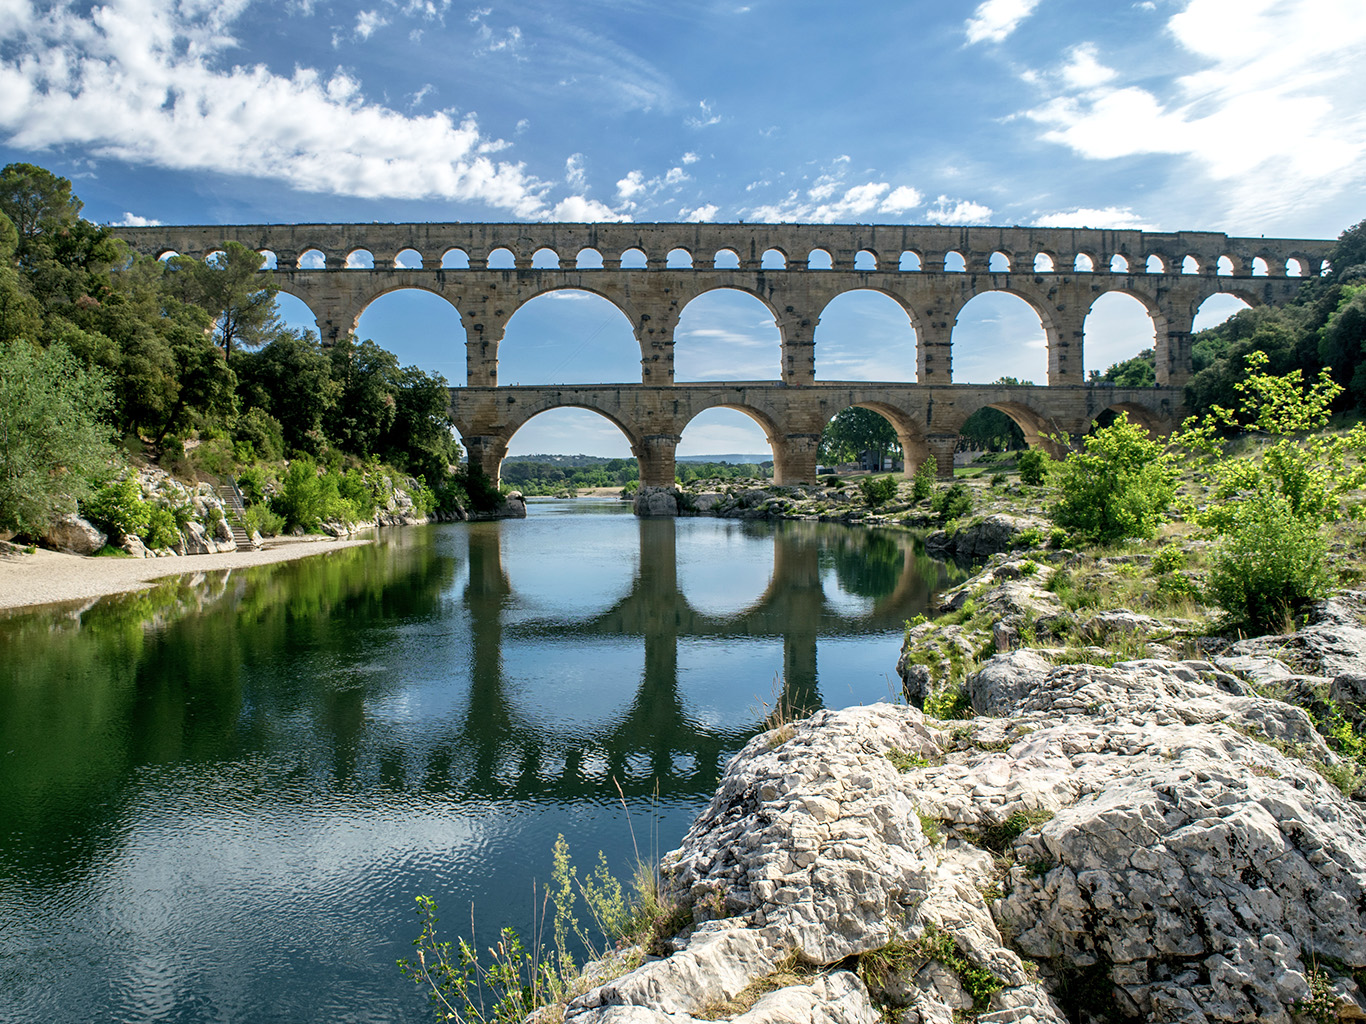 Řeka Gard pod slavným akvaduktem skýtá možnost nevšedního koupání